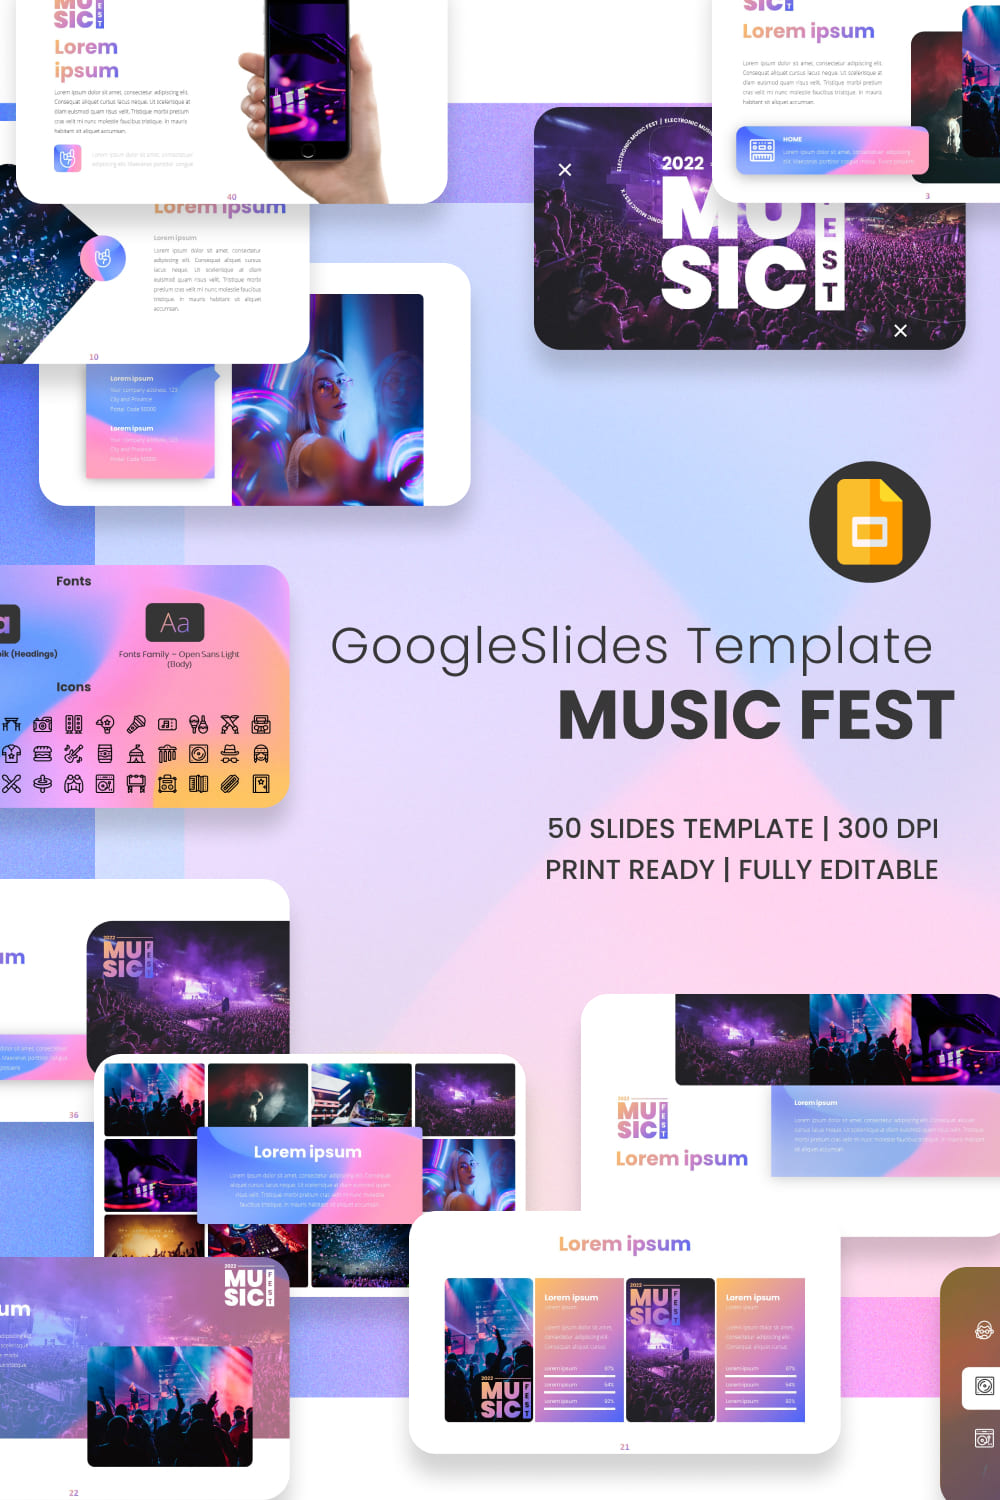 Music Fest Template in Google Slides.